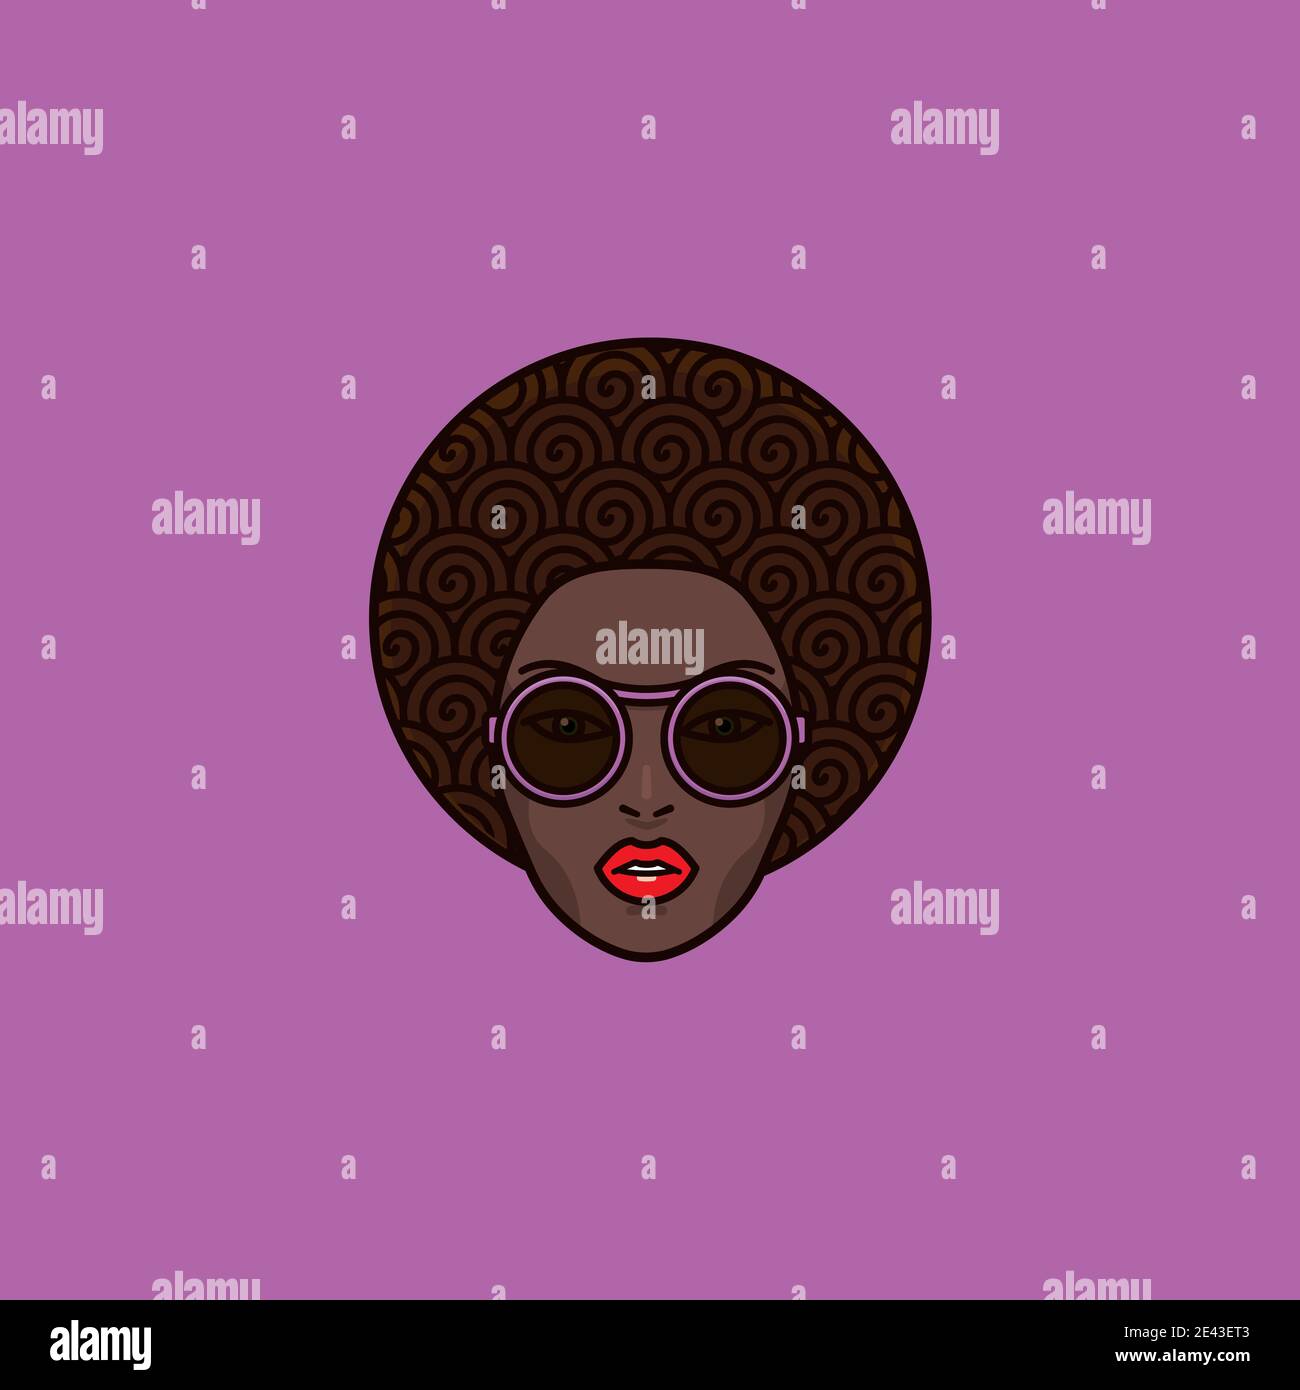 Cheveux bouclés belle femme africaine visage avec des lunettes de soleil pourpres et Illustration vectorielle Red Lips pour la Journée africaine du 15 septembre Illustration de Vecteur